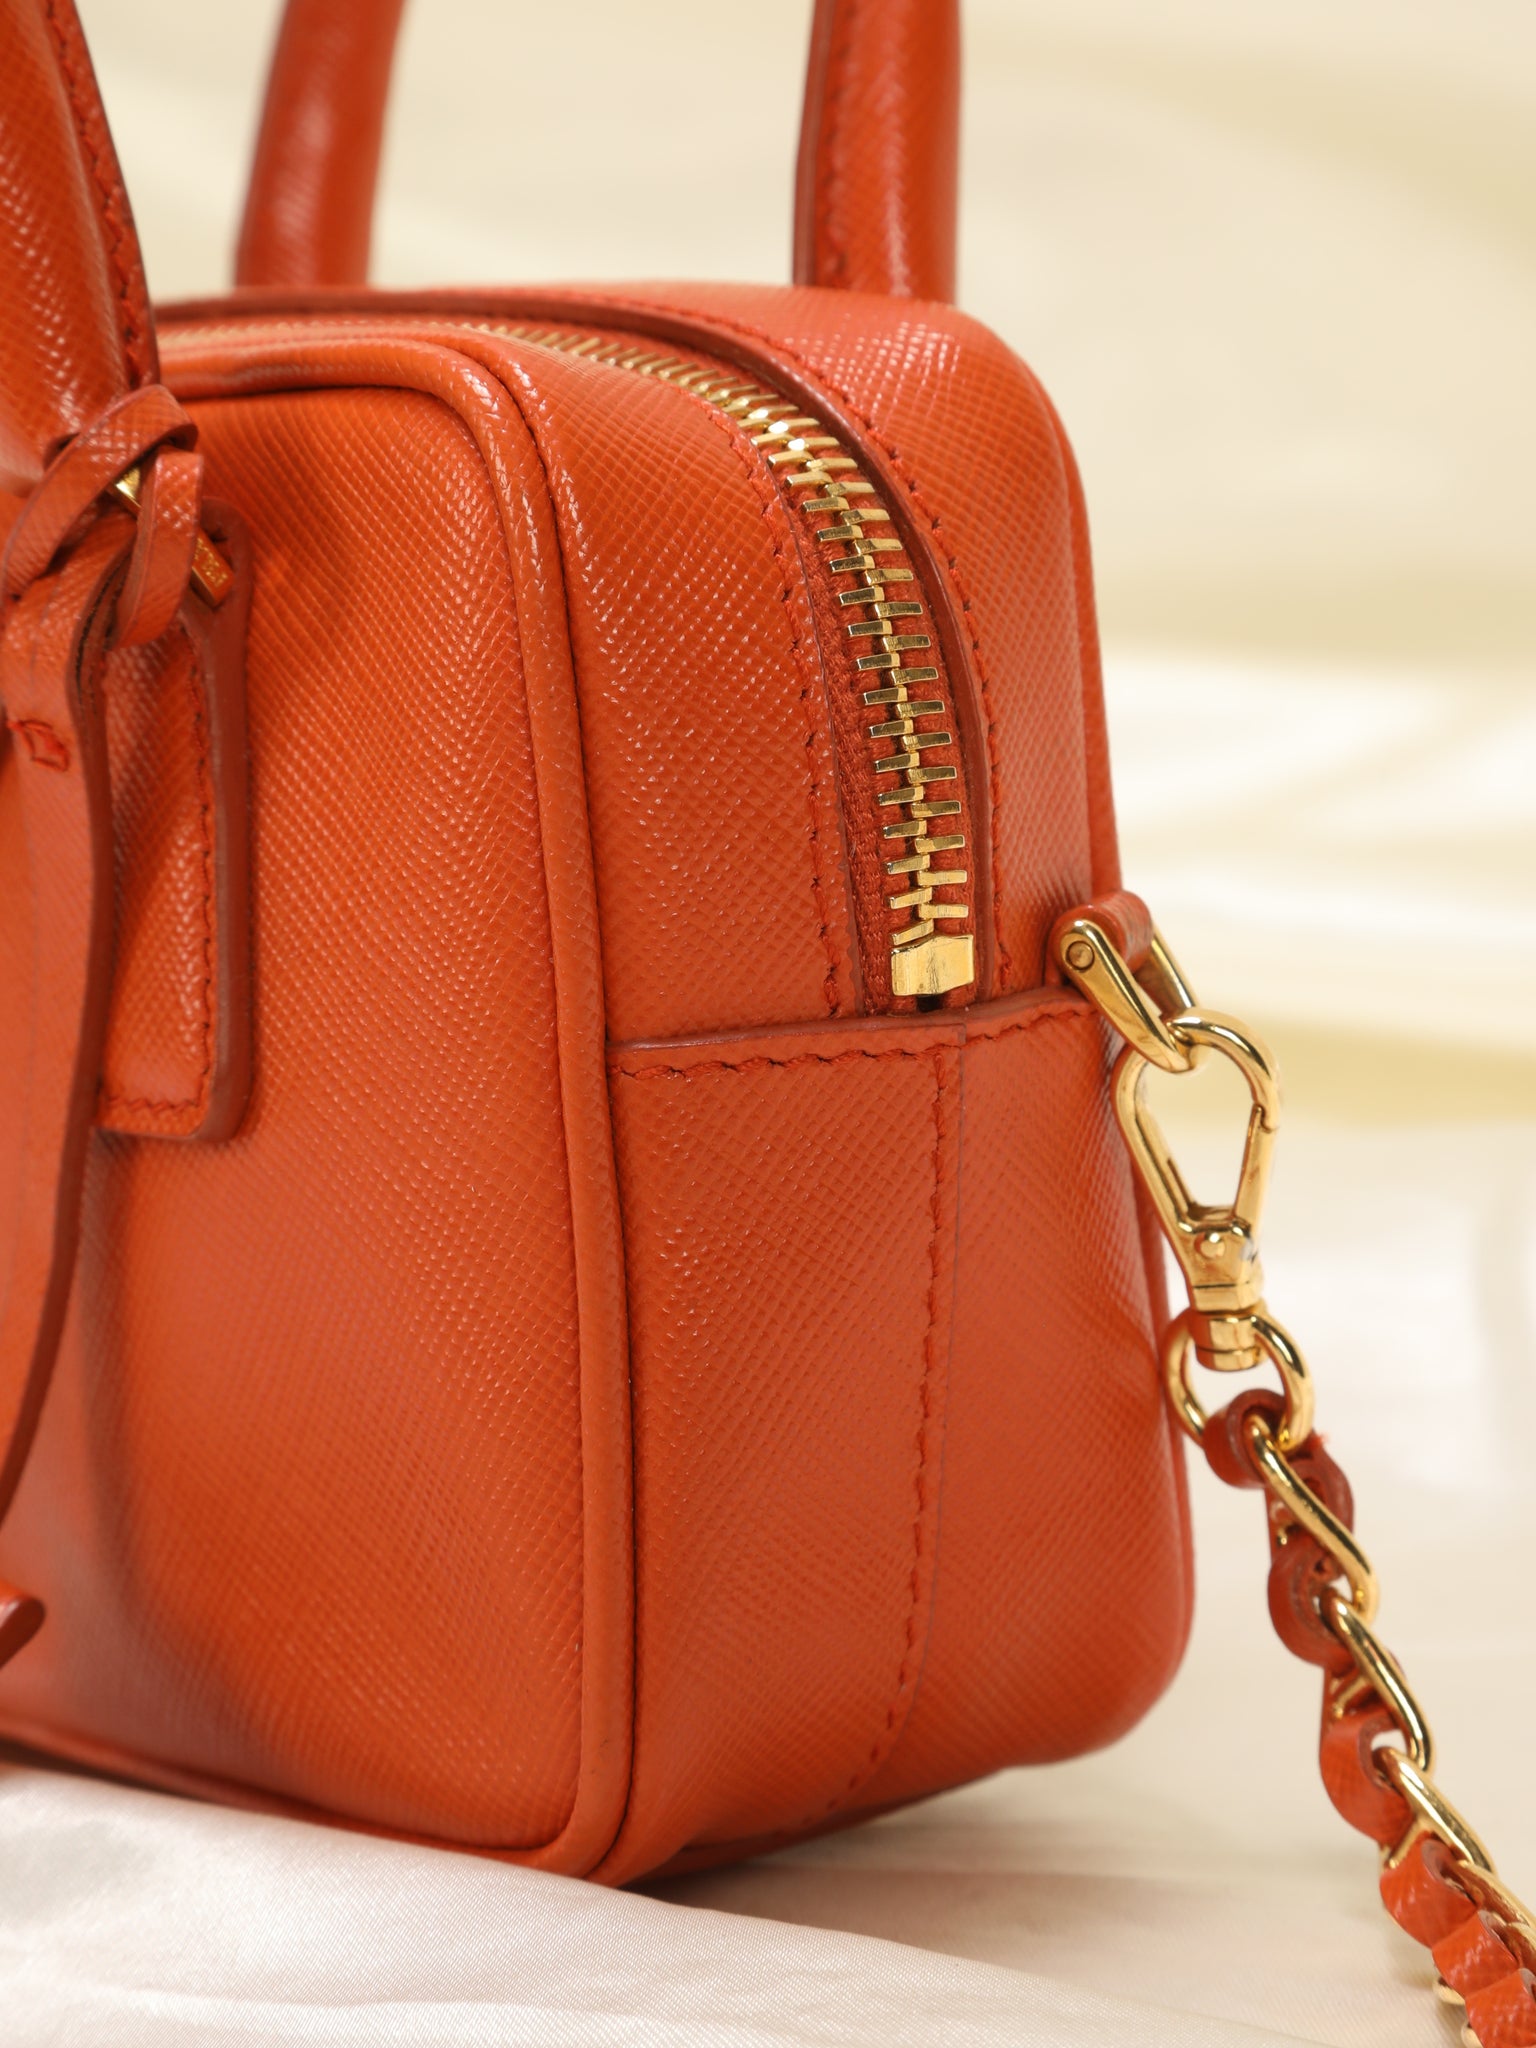 Prada, Bags, Prada Bauletto Handbag Saffiano Leather Small